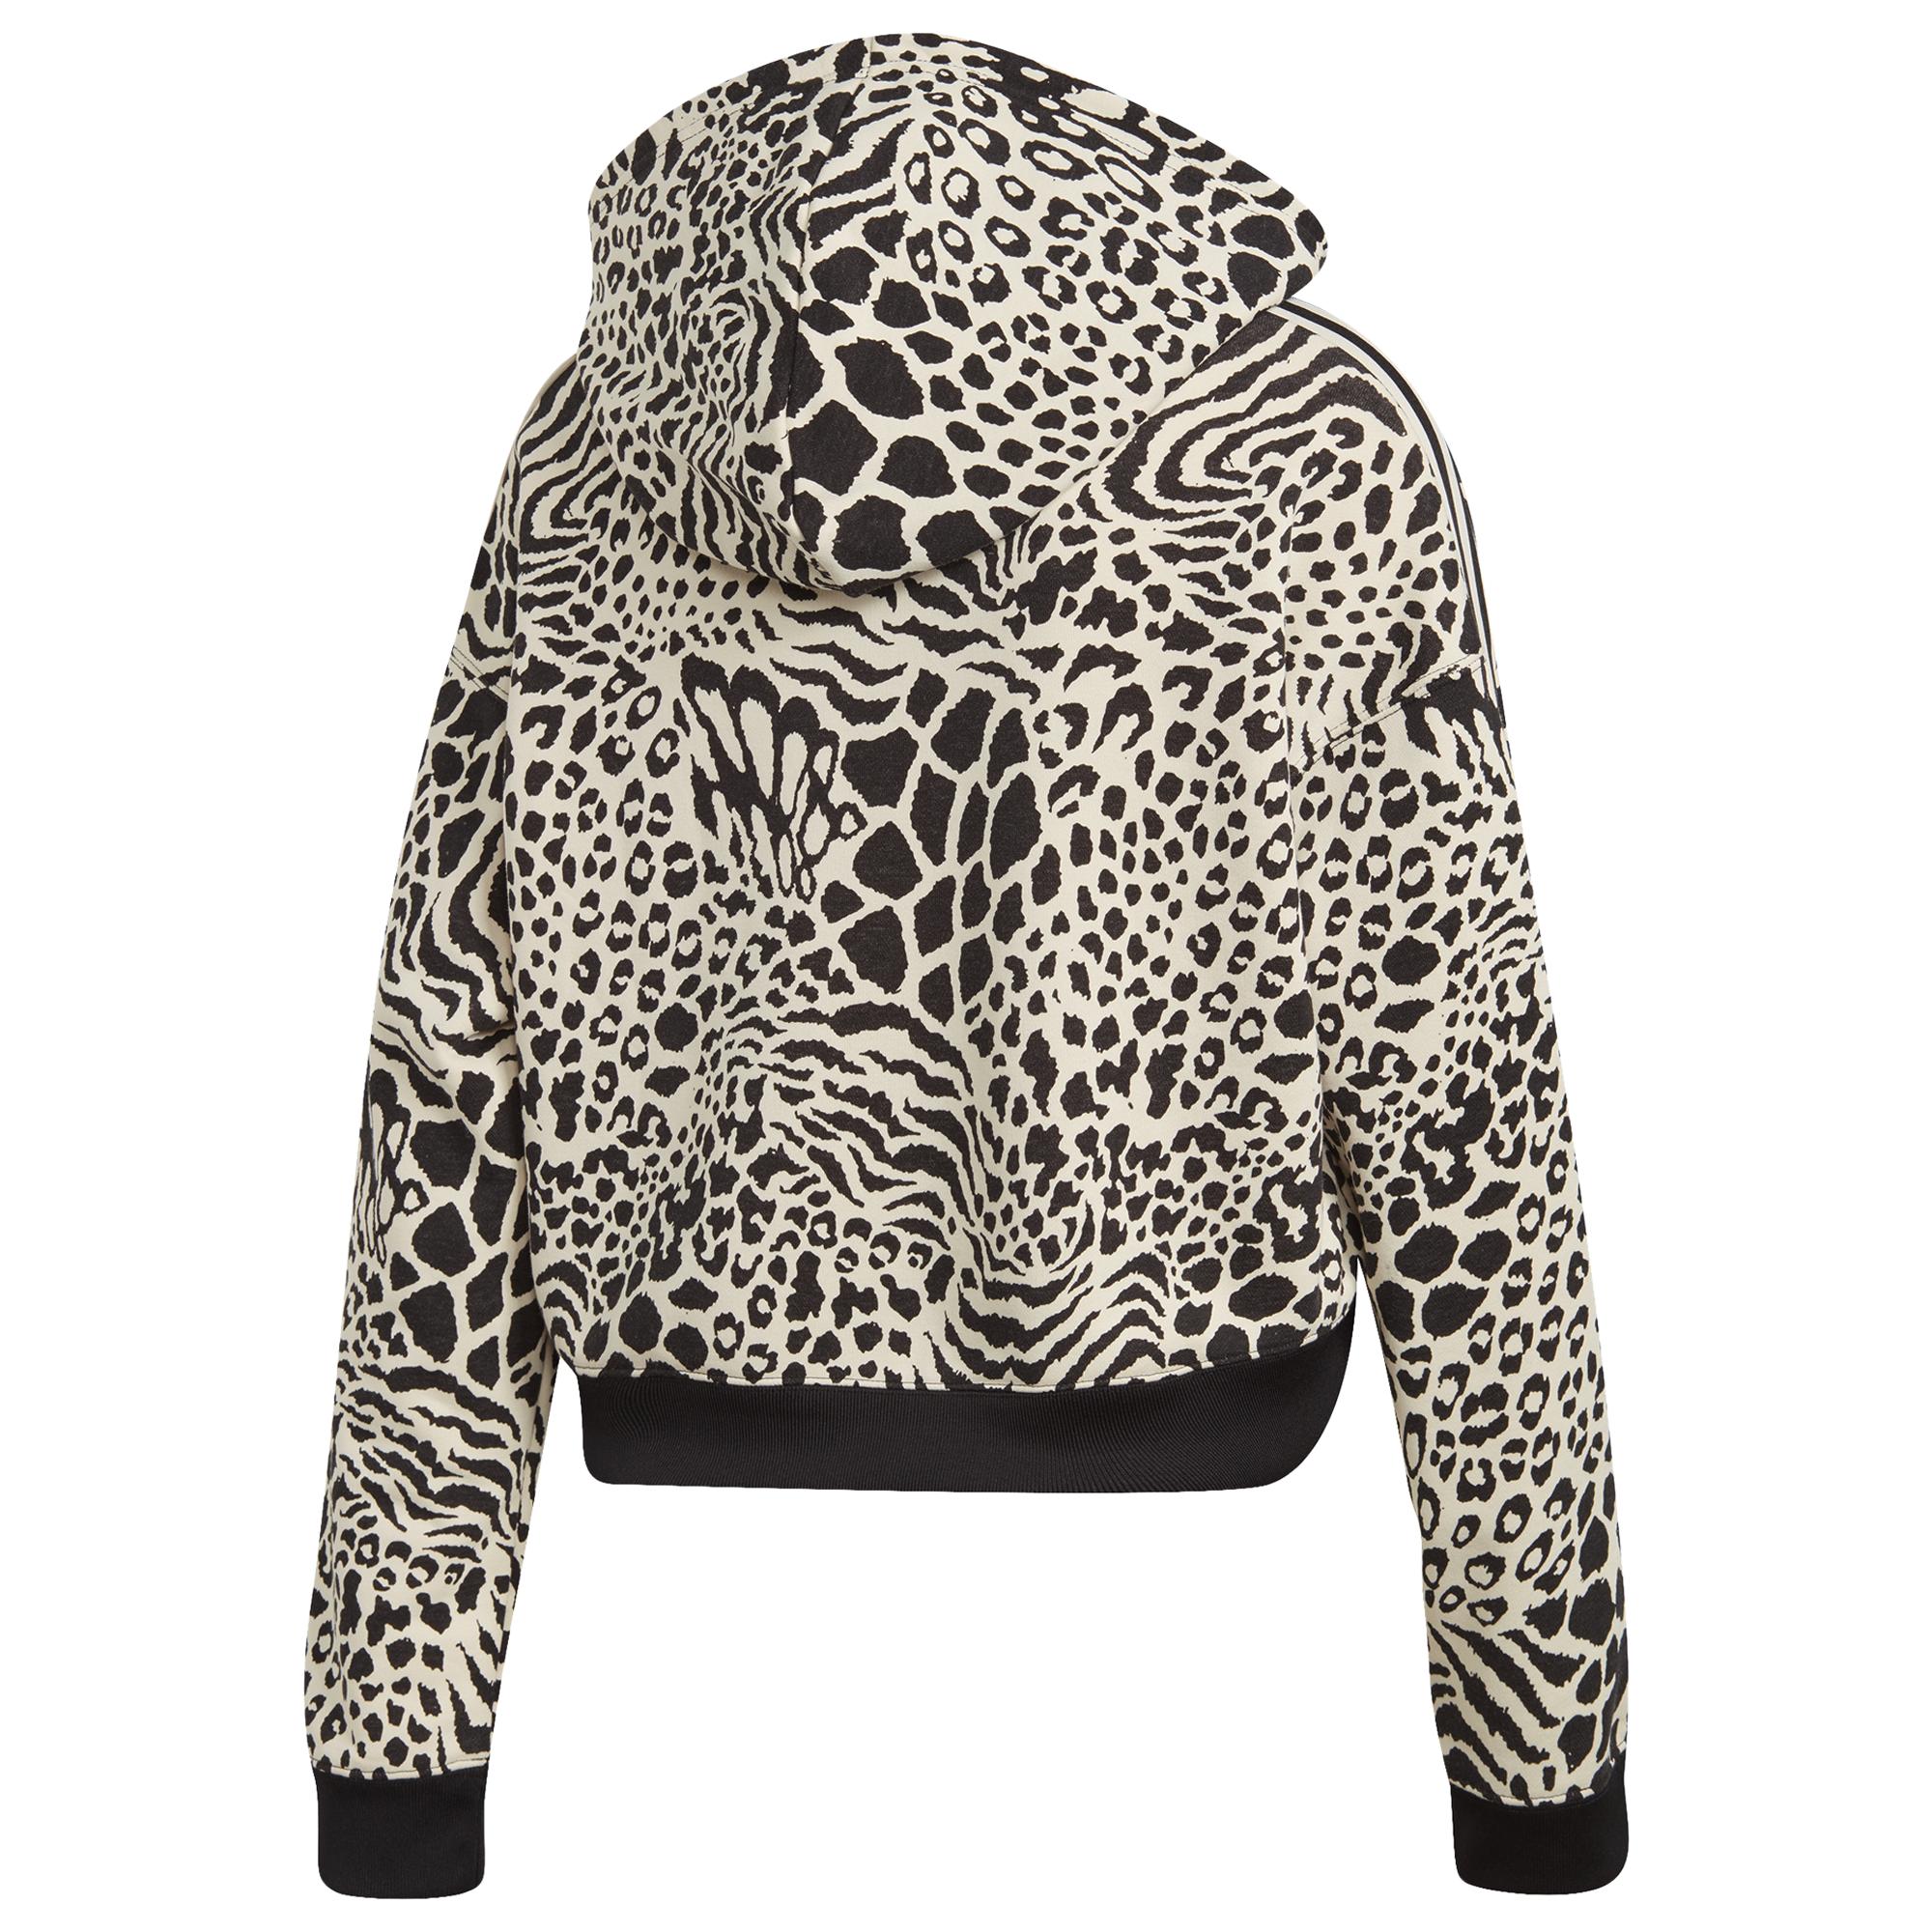 leopard print adidas jumper